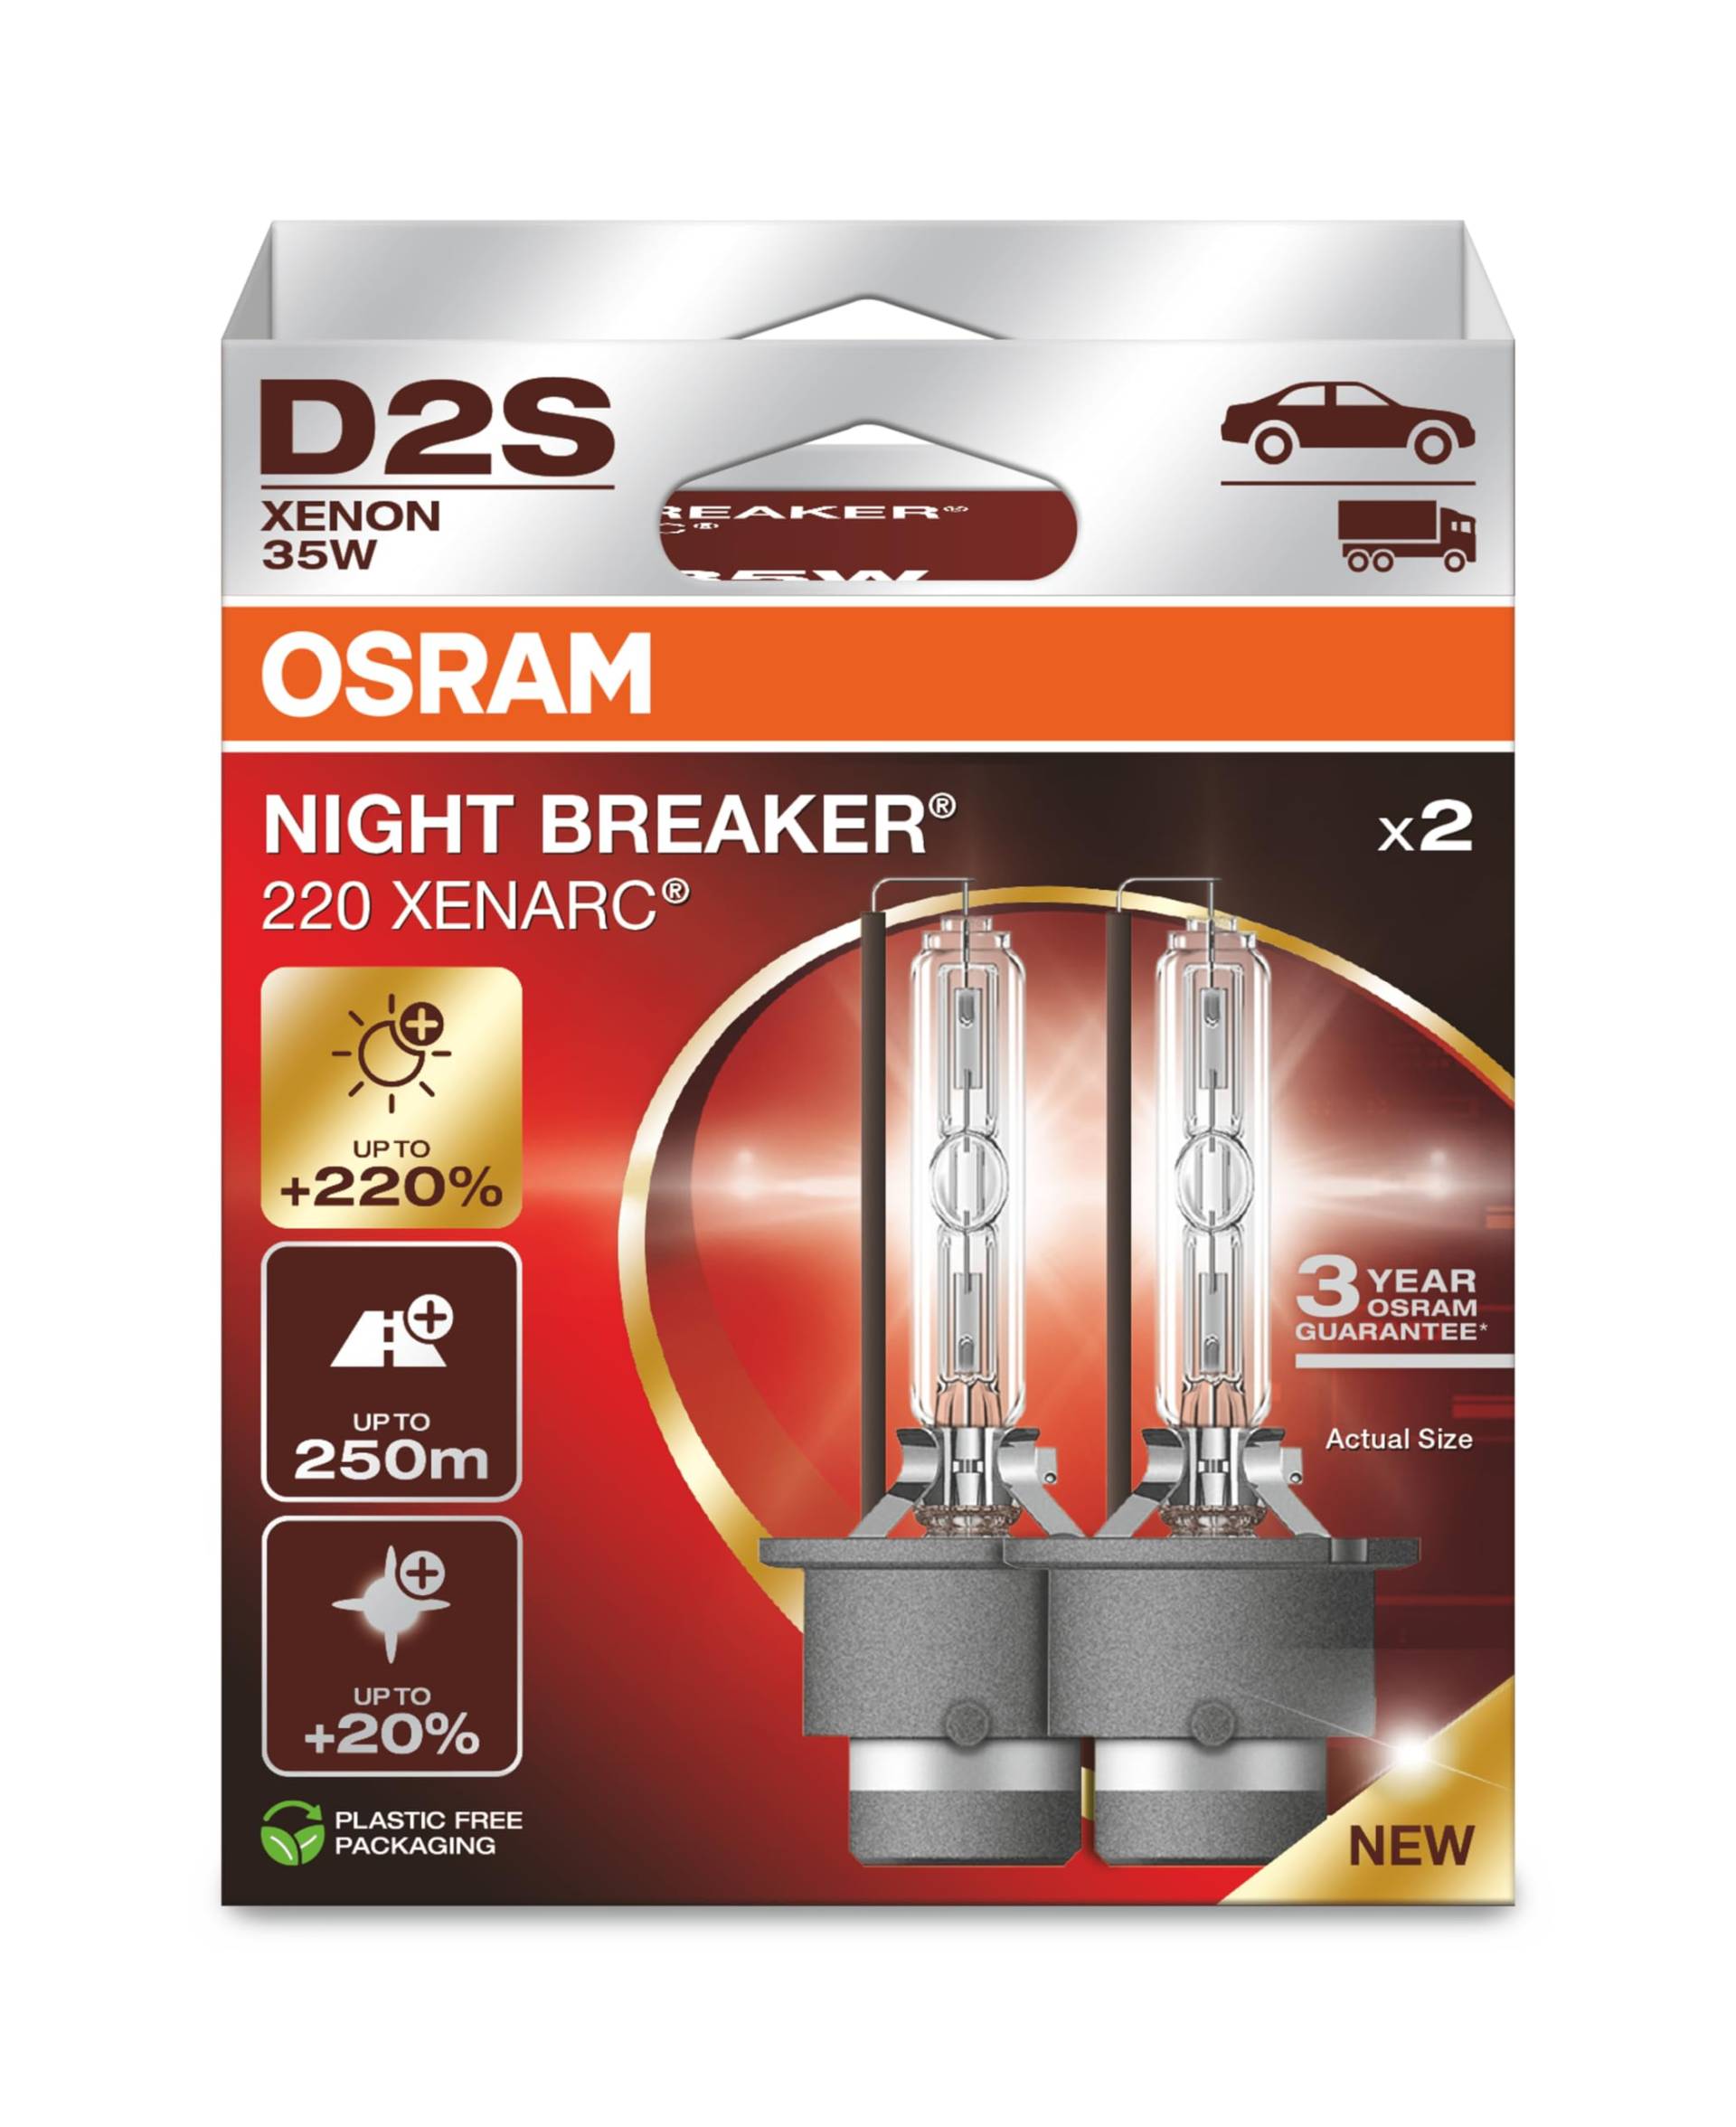 OSRAM XENARC NIGHT BREAKER 220, D2S, 220% mehr Helligkeit, Xenon-Scheinwerferlampe, 66240XN2-2HB, Faltschachtel (2 Lampen) von Osram